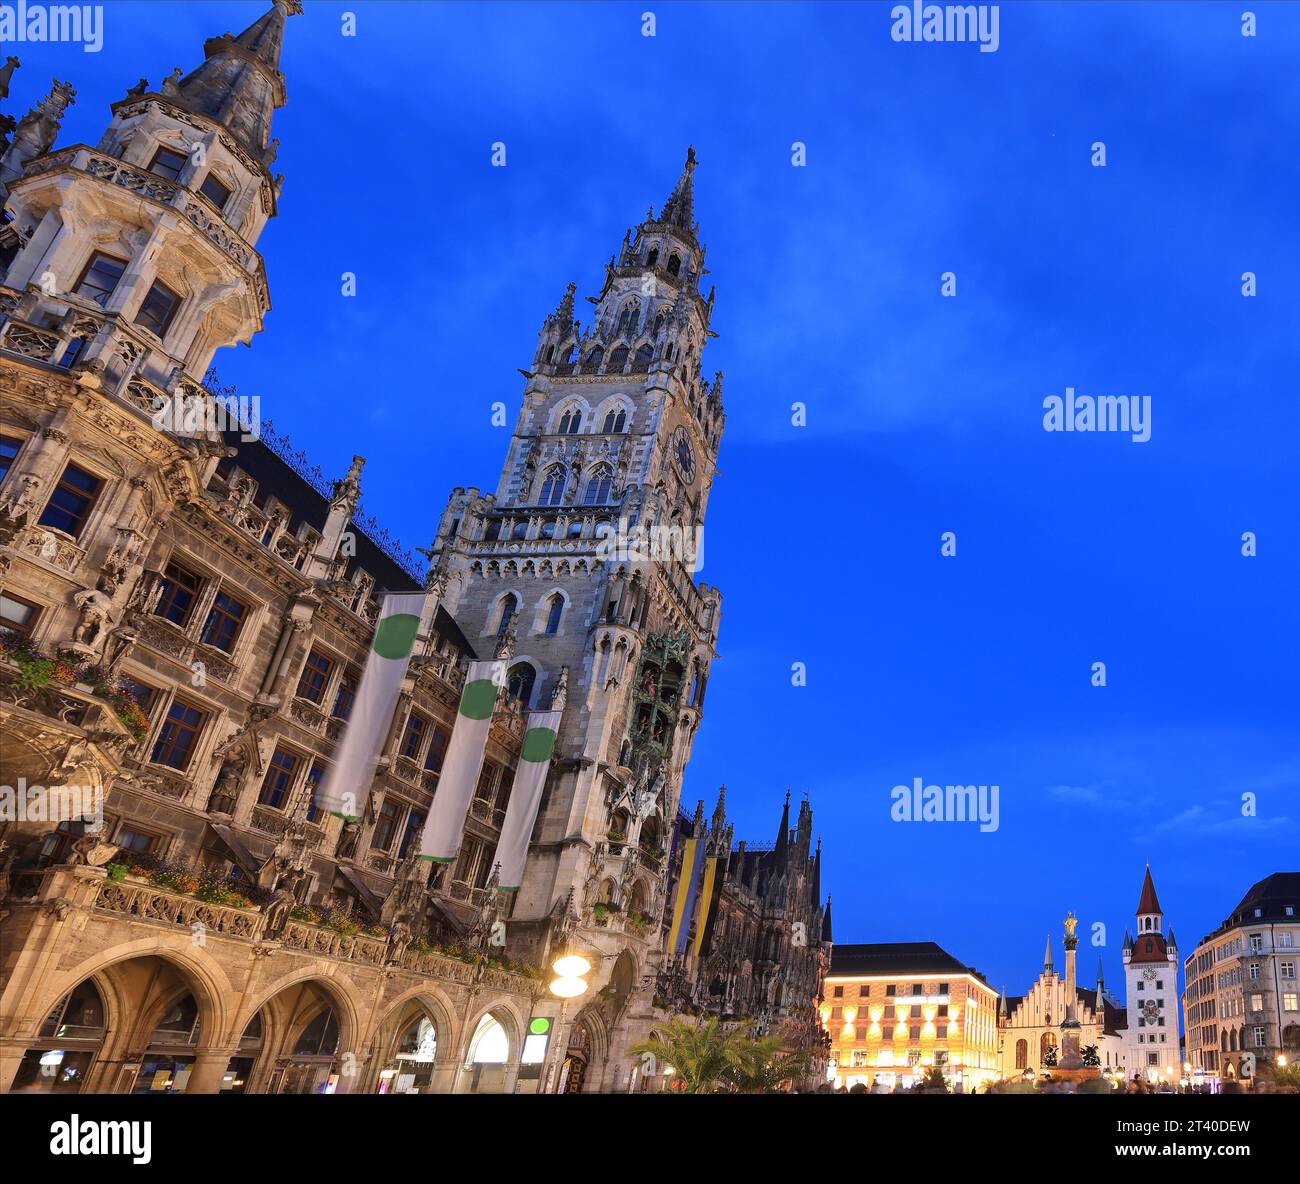 La place de Marie illuminée au crépuscule avec l'ancien hôtel de ville en arrière-plan à Munich, en Allemagne Banque D'Images